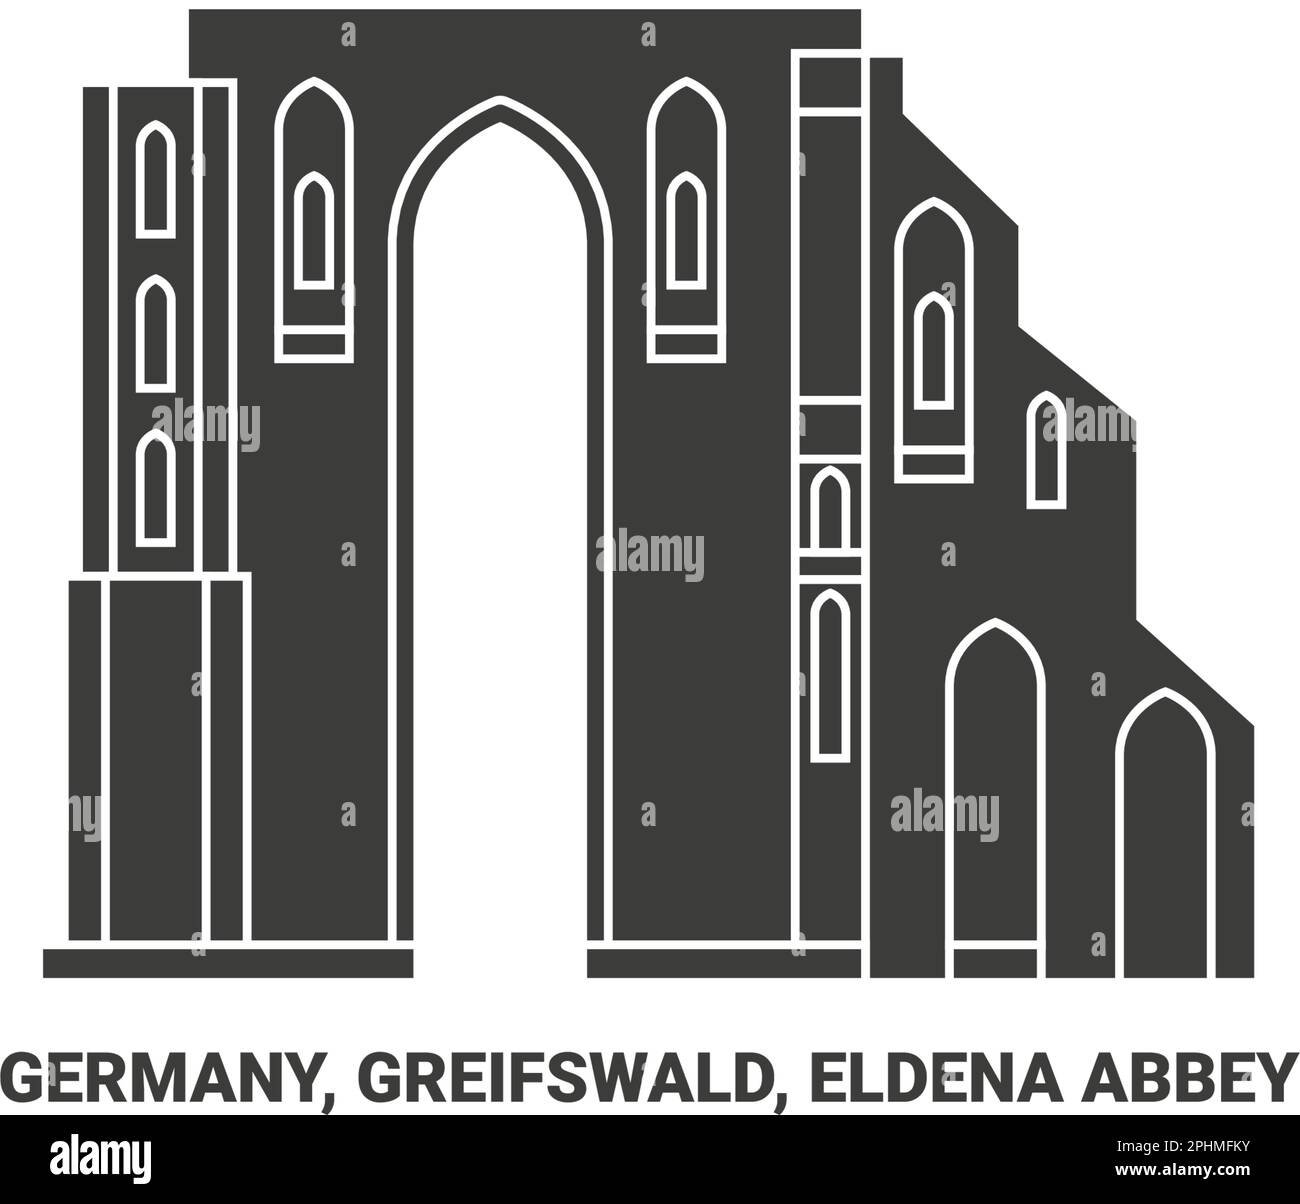 Allemagne, Greifswald, Eldena Abbey voyage illustration vecteur Illustration de Vecteur